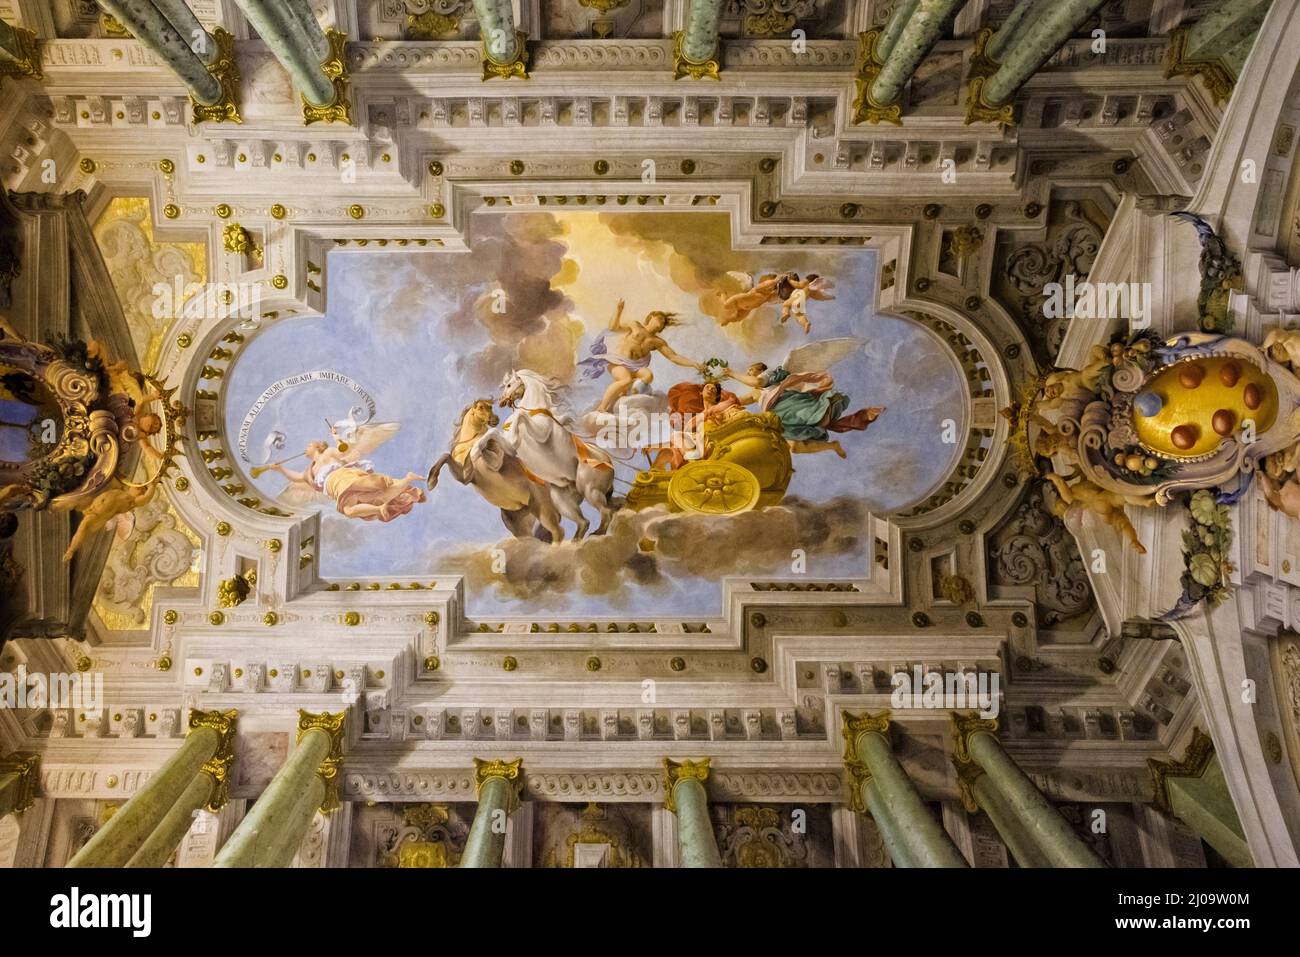 Intérieur du Palazzo Pitti (Palais Pitti), murale au plafond, Florence, région Toscane, Italie Banque D'Images